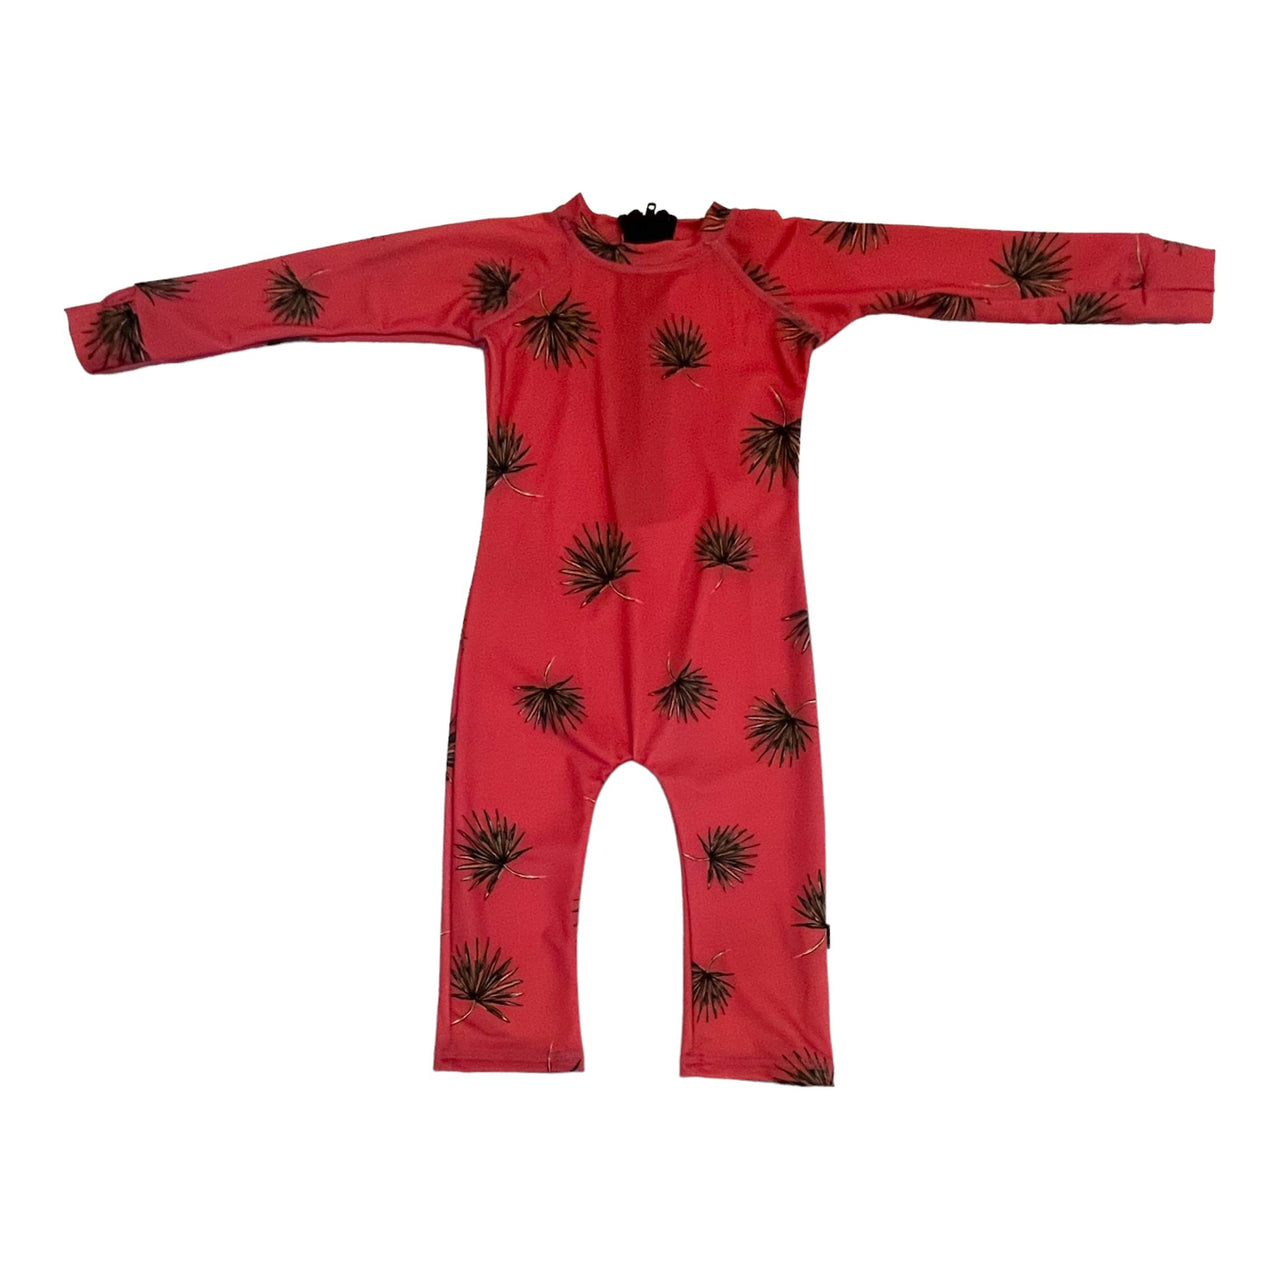 Infant/Toddler SHRED Full Suit